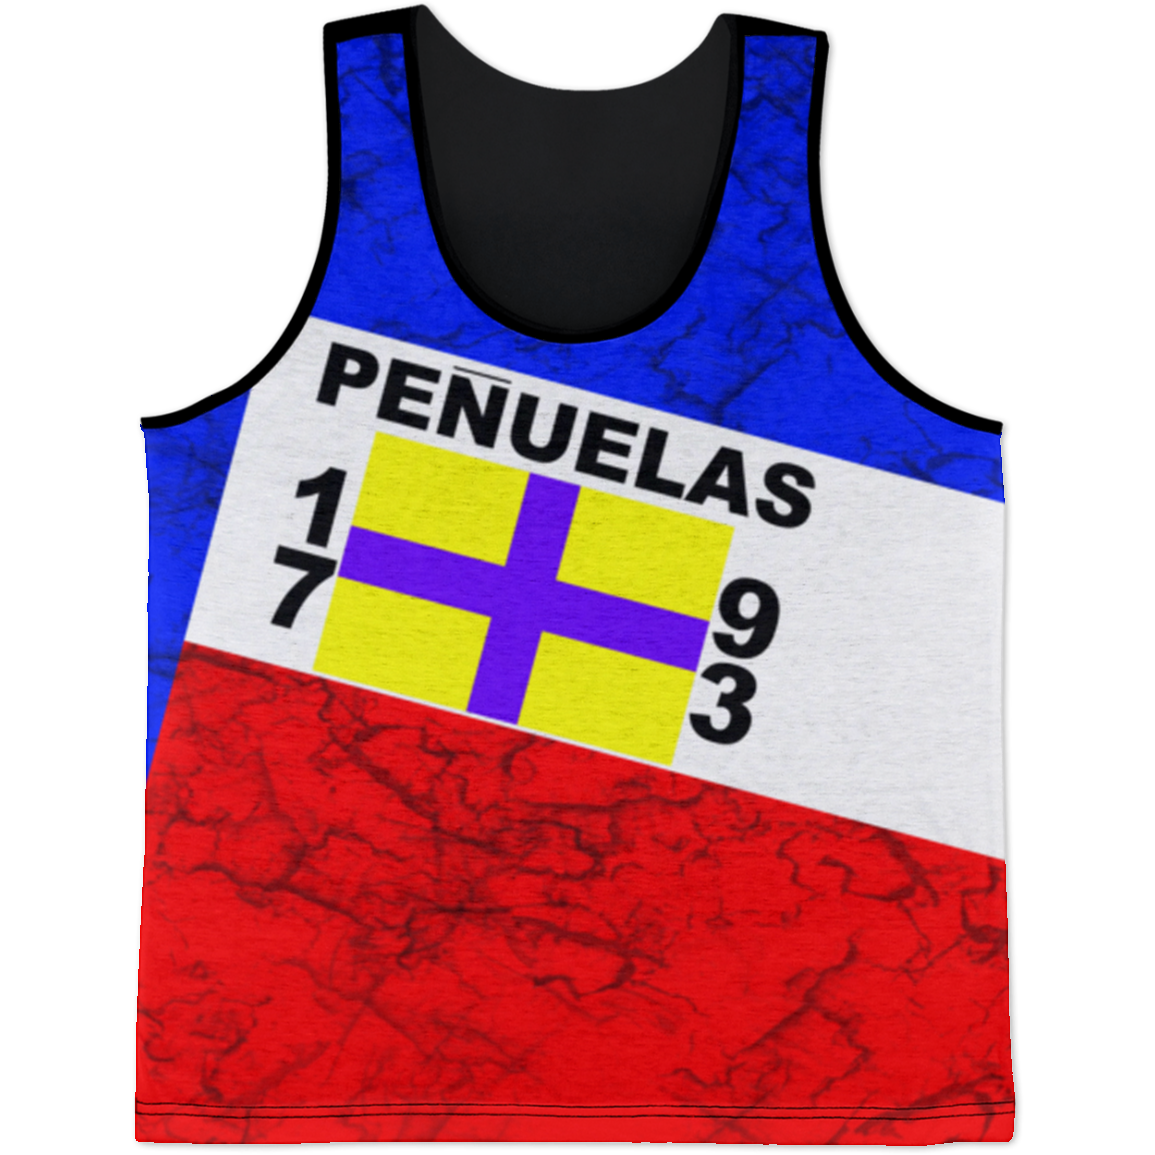 Penuelas Tank Top - Puerto Rican Pride